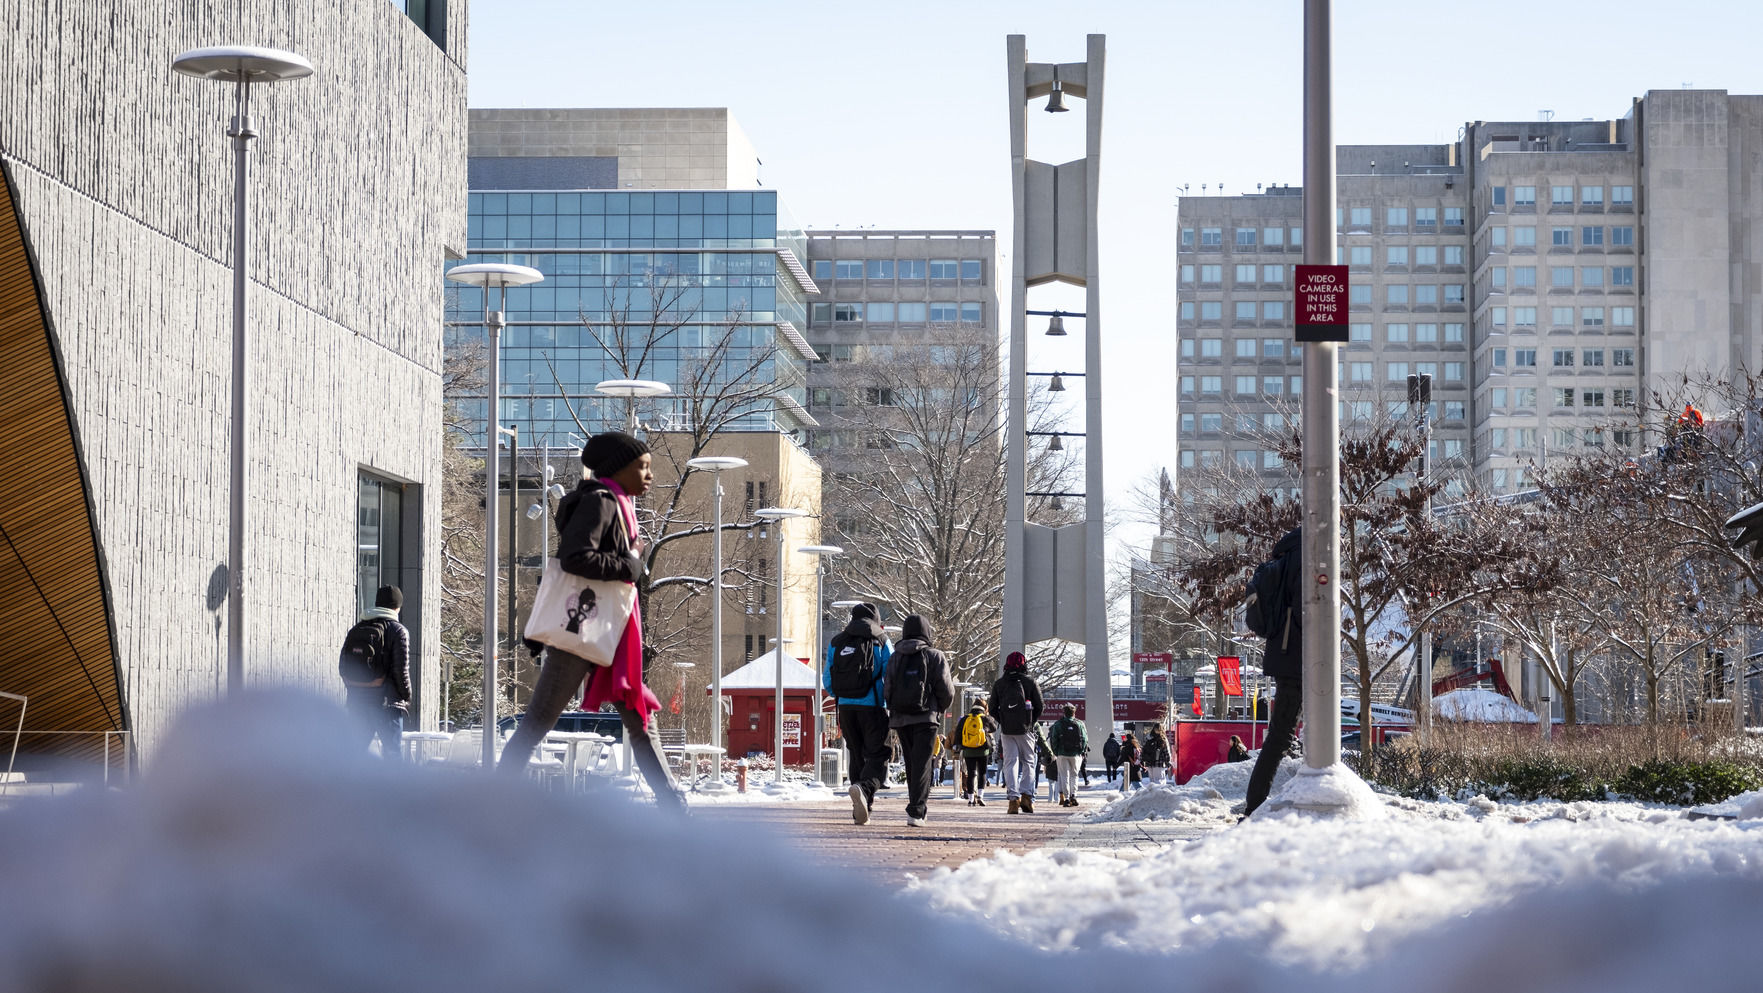 A winter scene of campus.